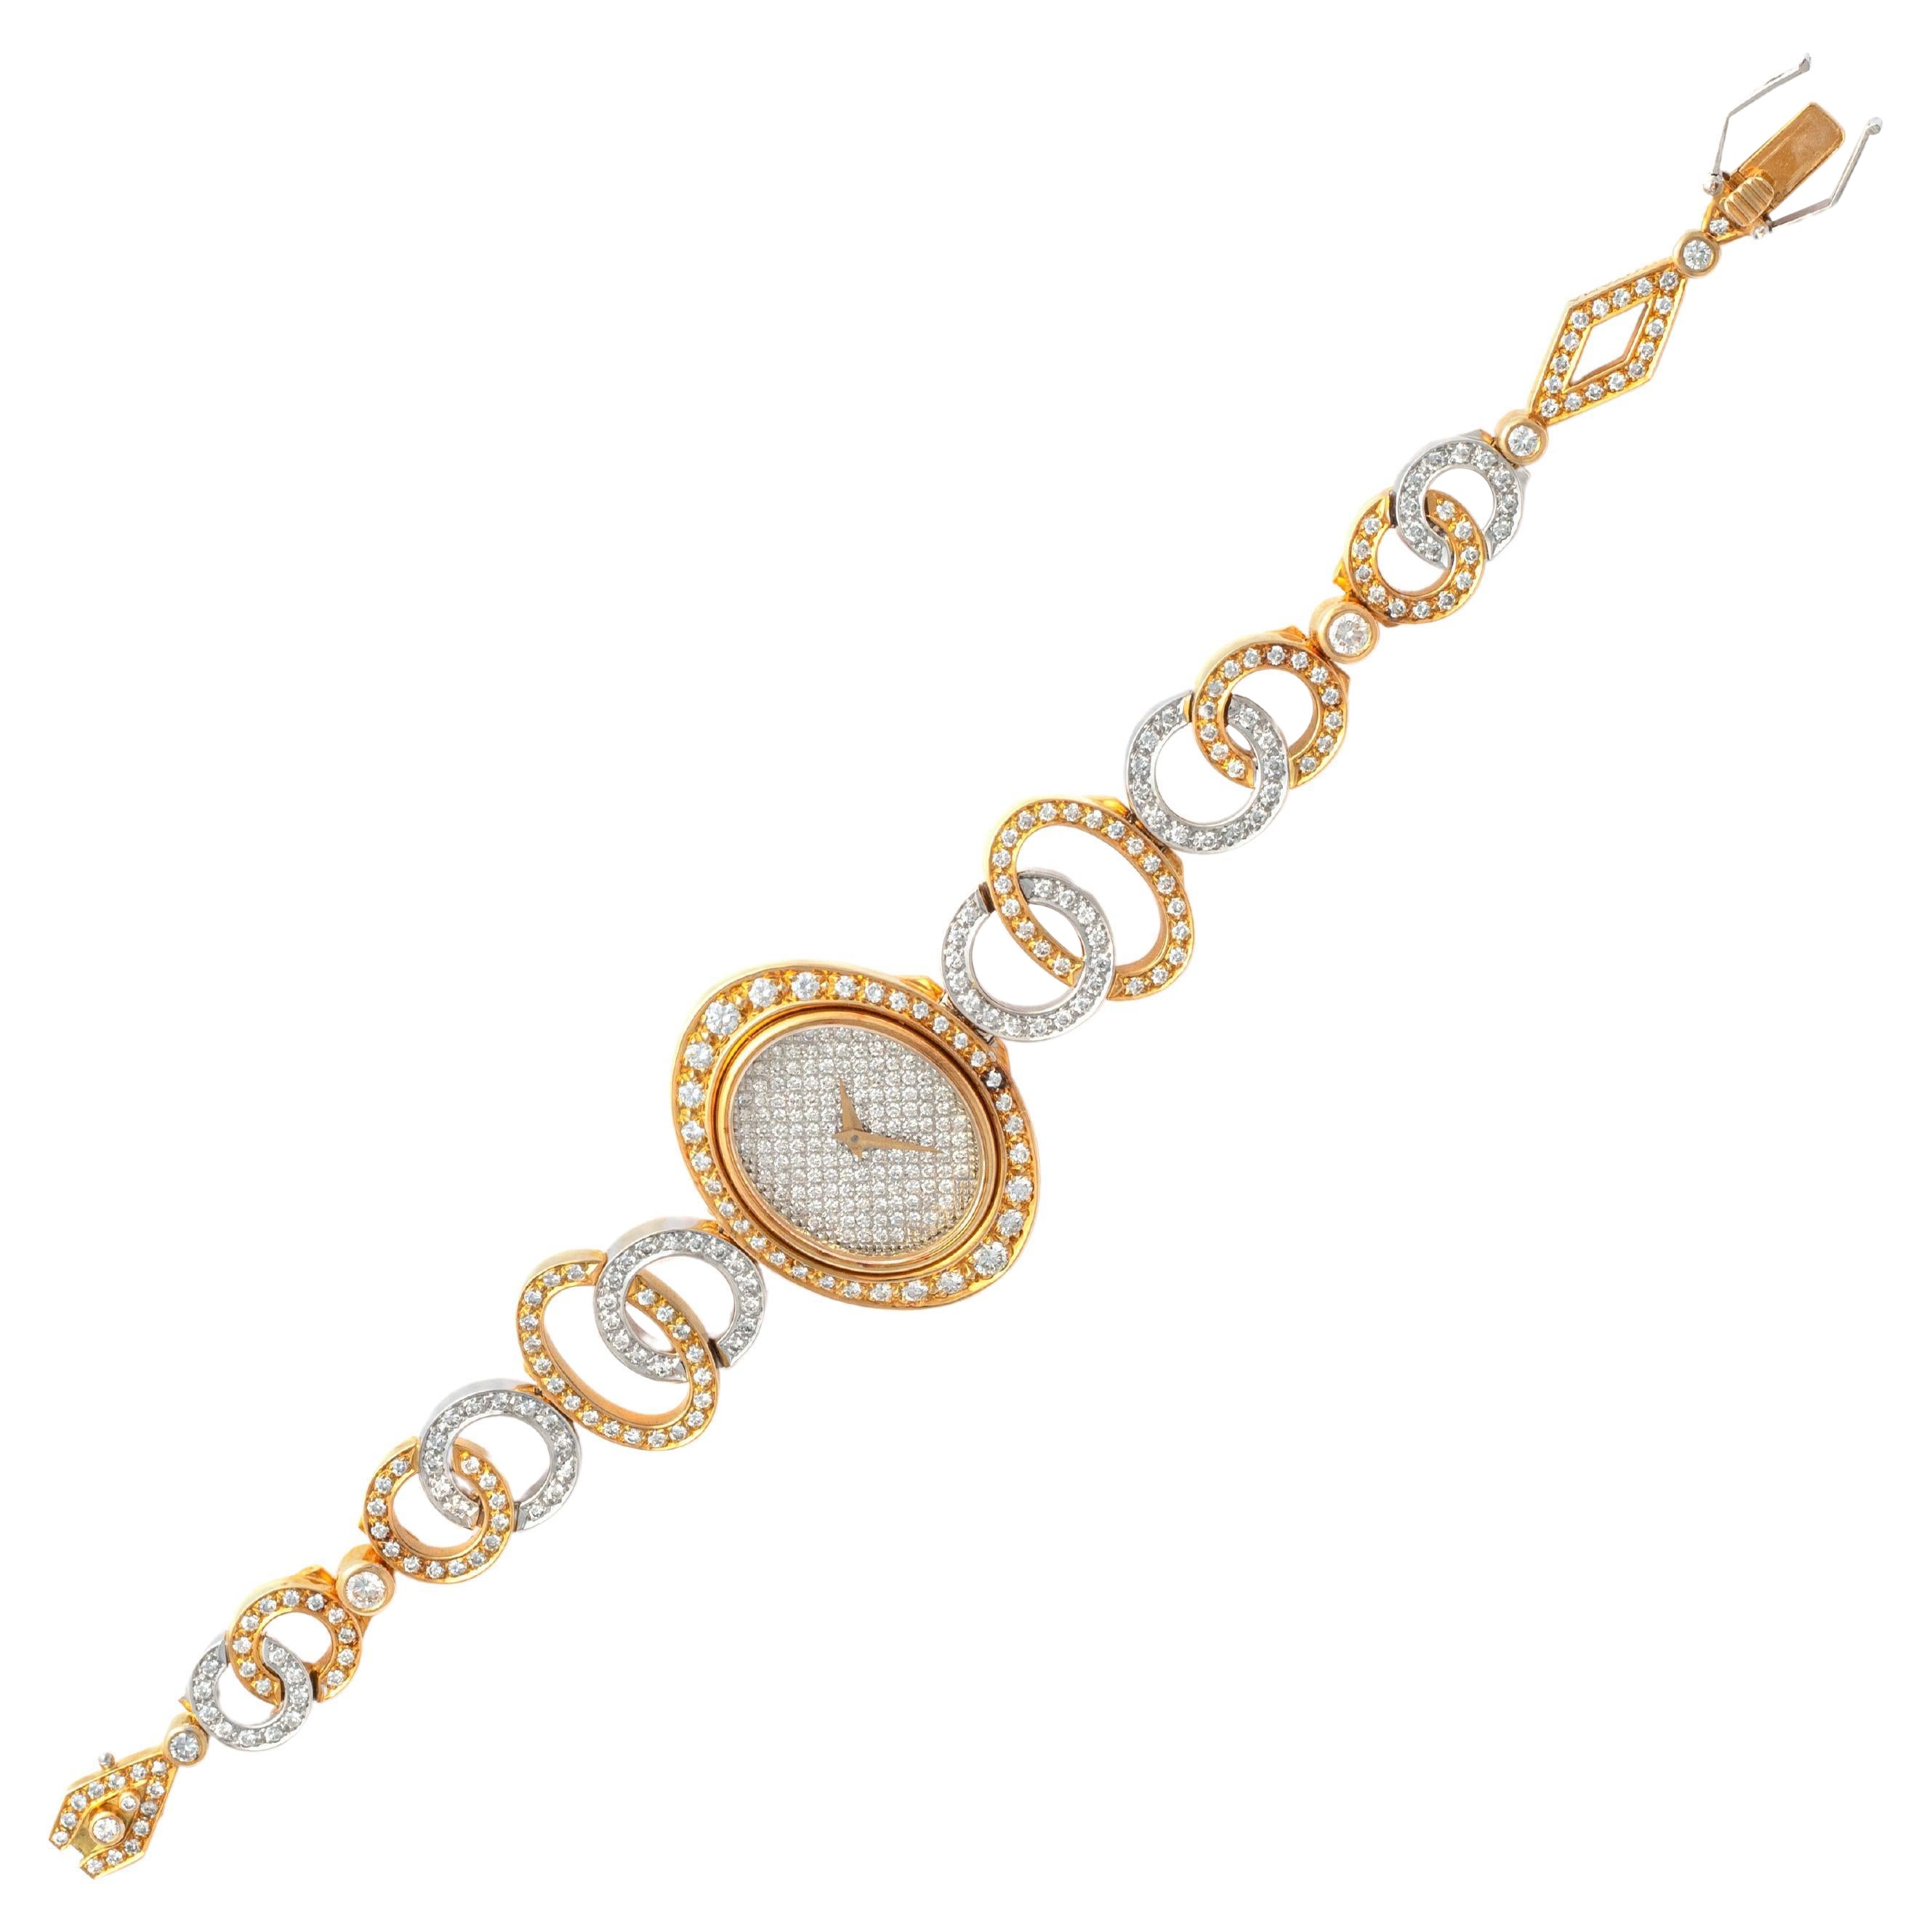 Julia-Plana Diamond Yellow and White Gold 18K Wristwatch